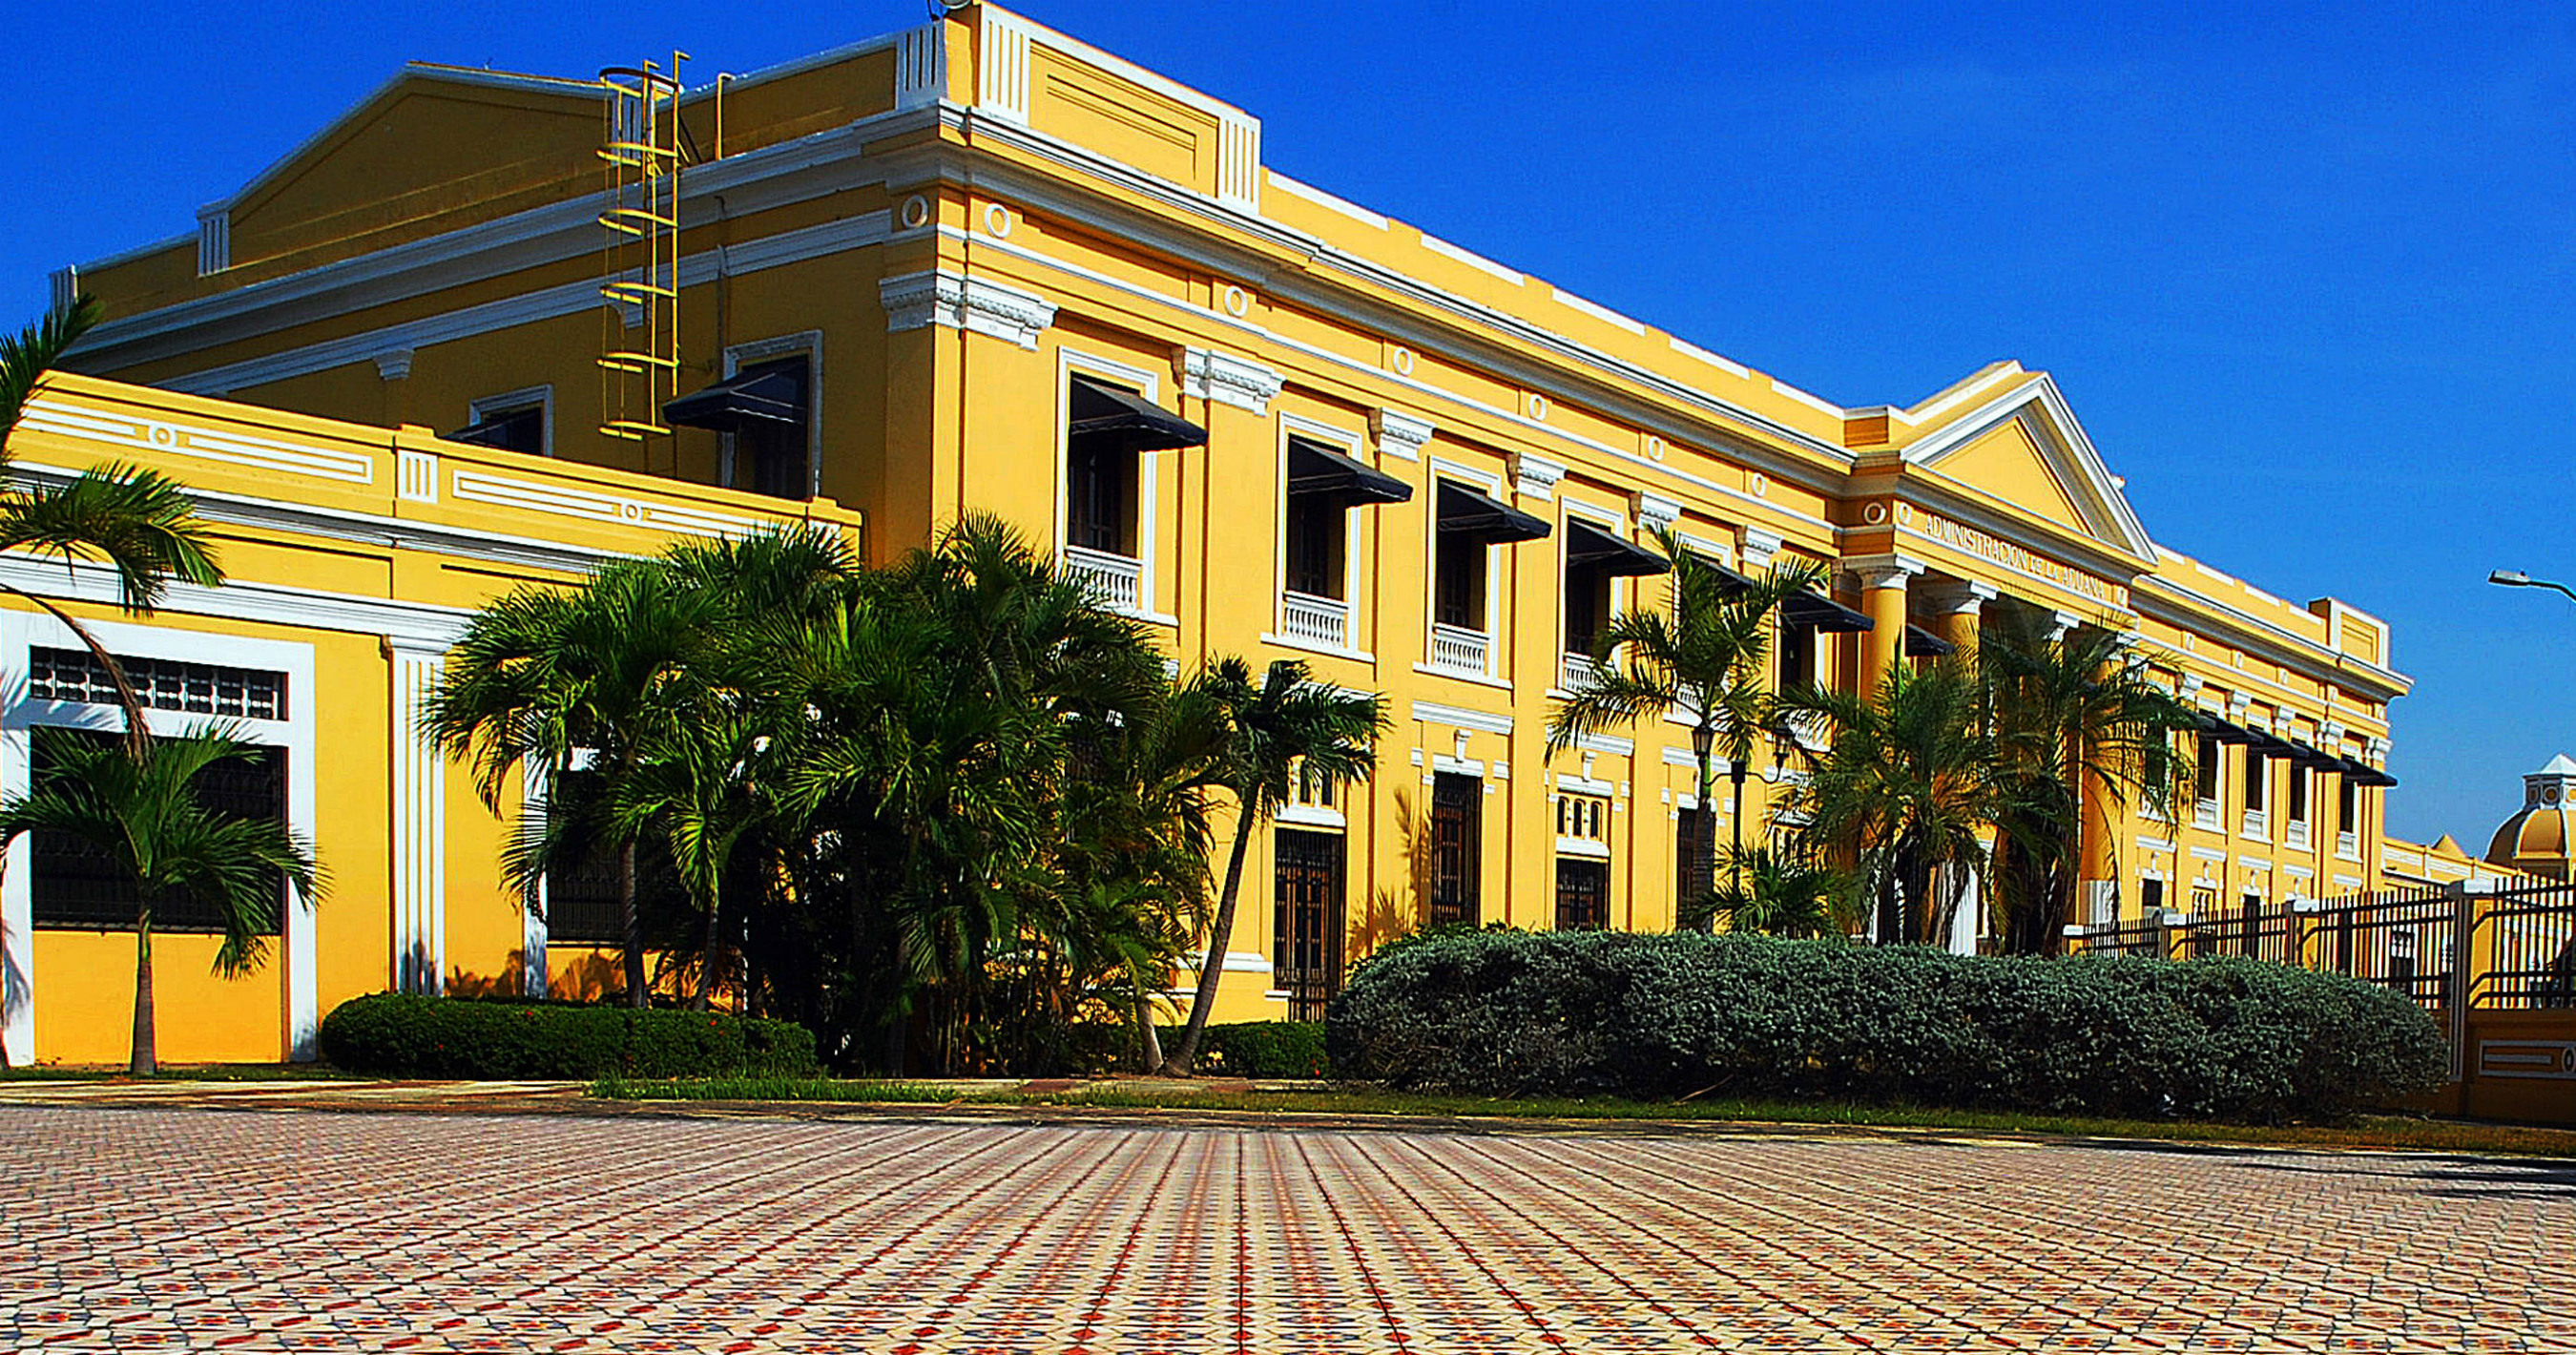 Edificio de la Aduana en el centro de la localidad colombiana de Barranquilla. Foto Cortesía Alcaldía de Barranquilla